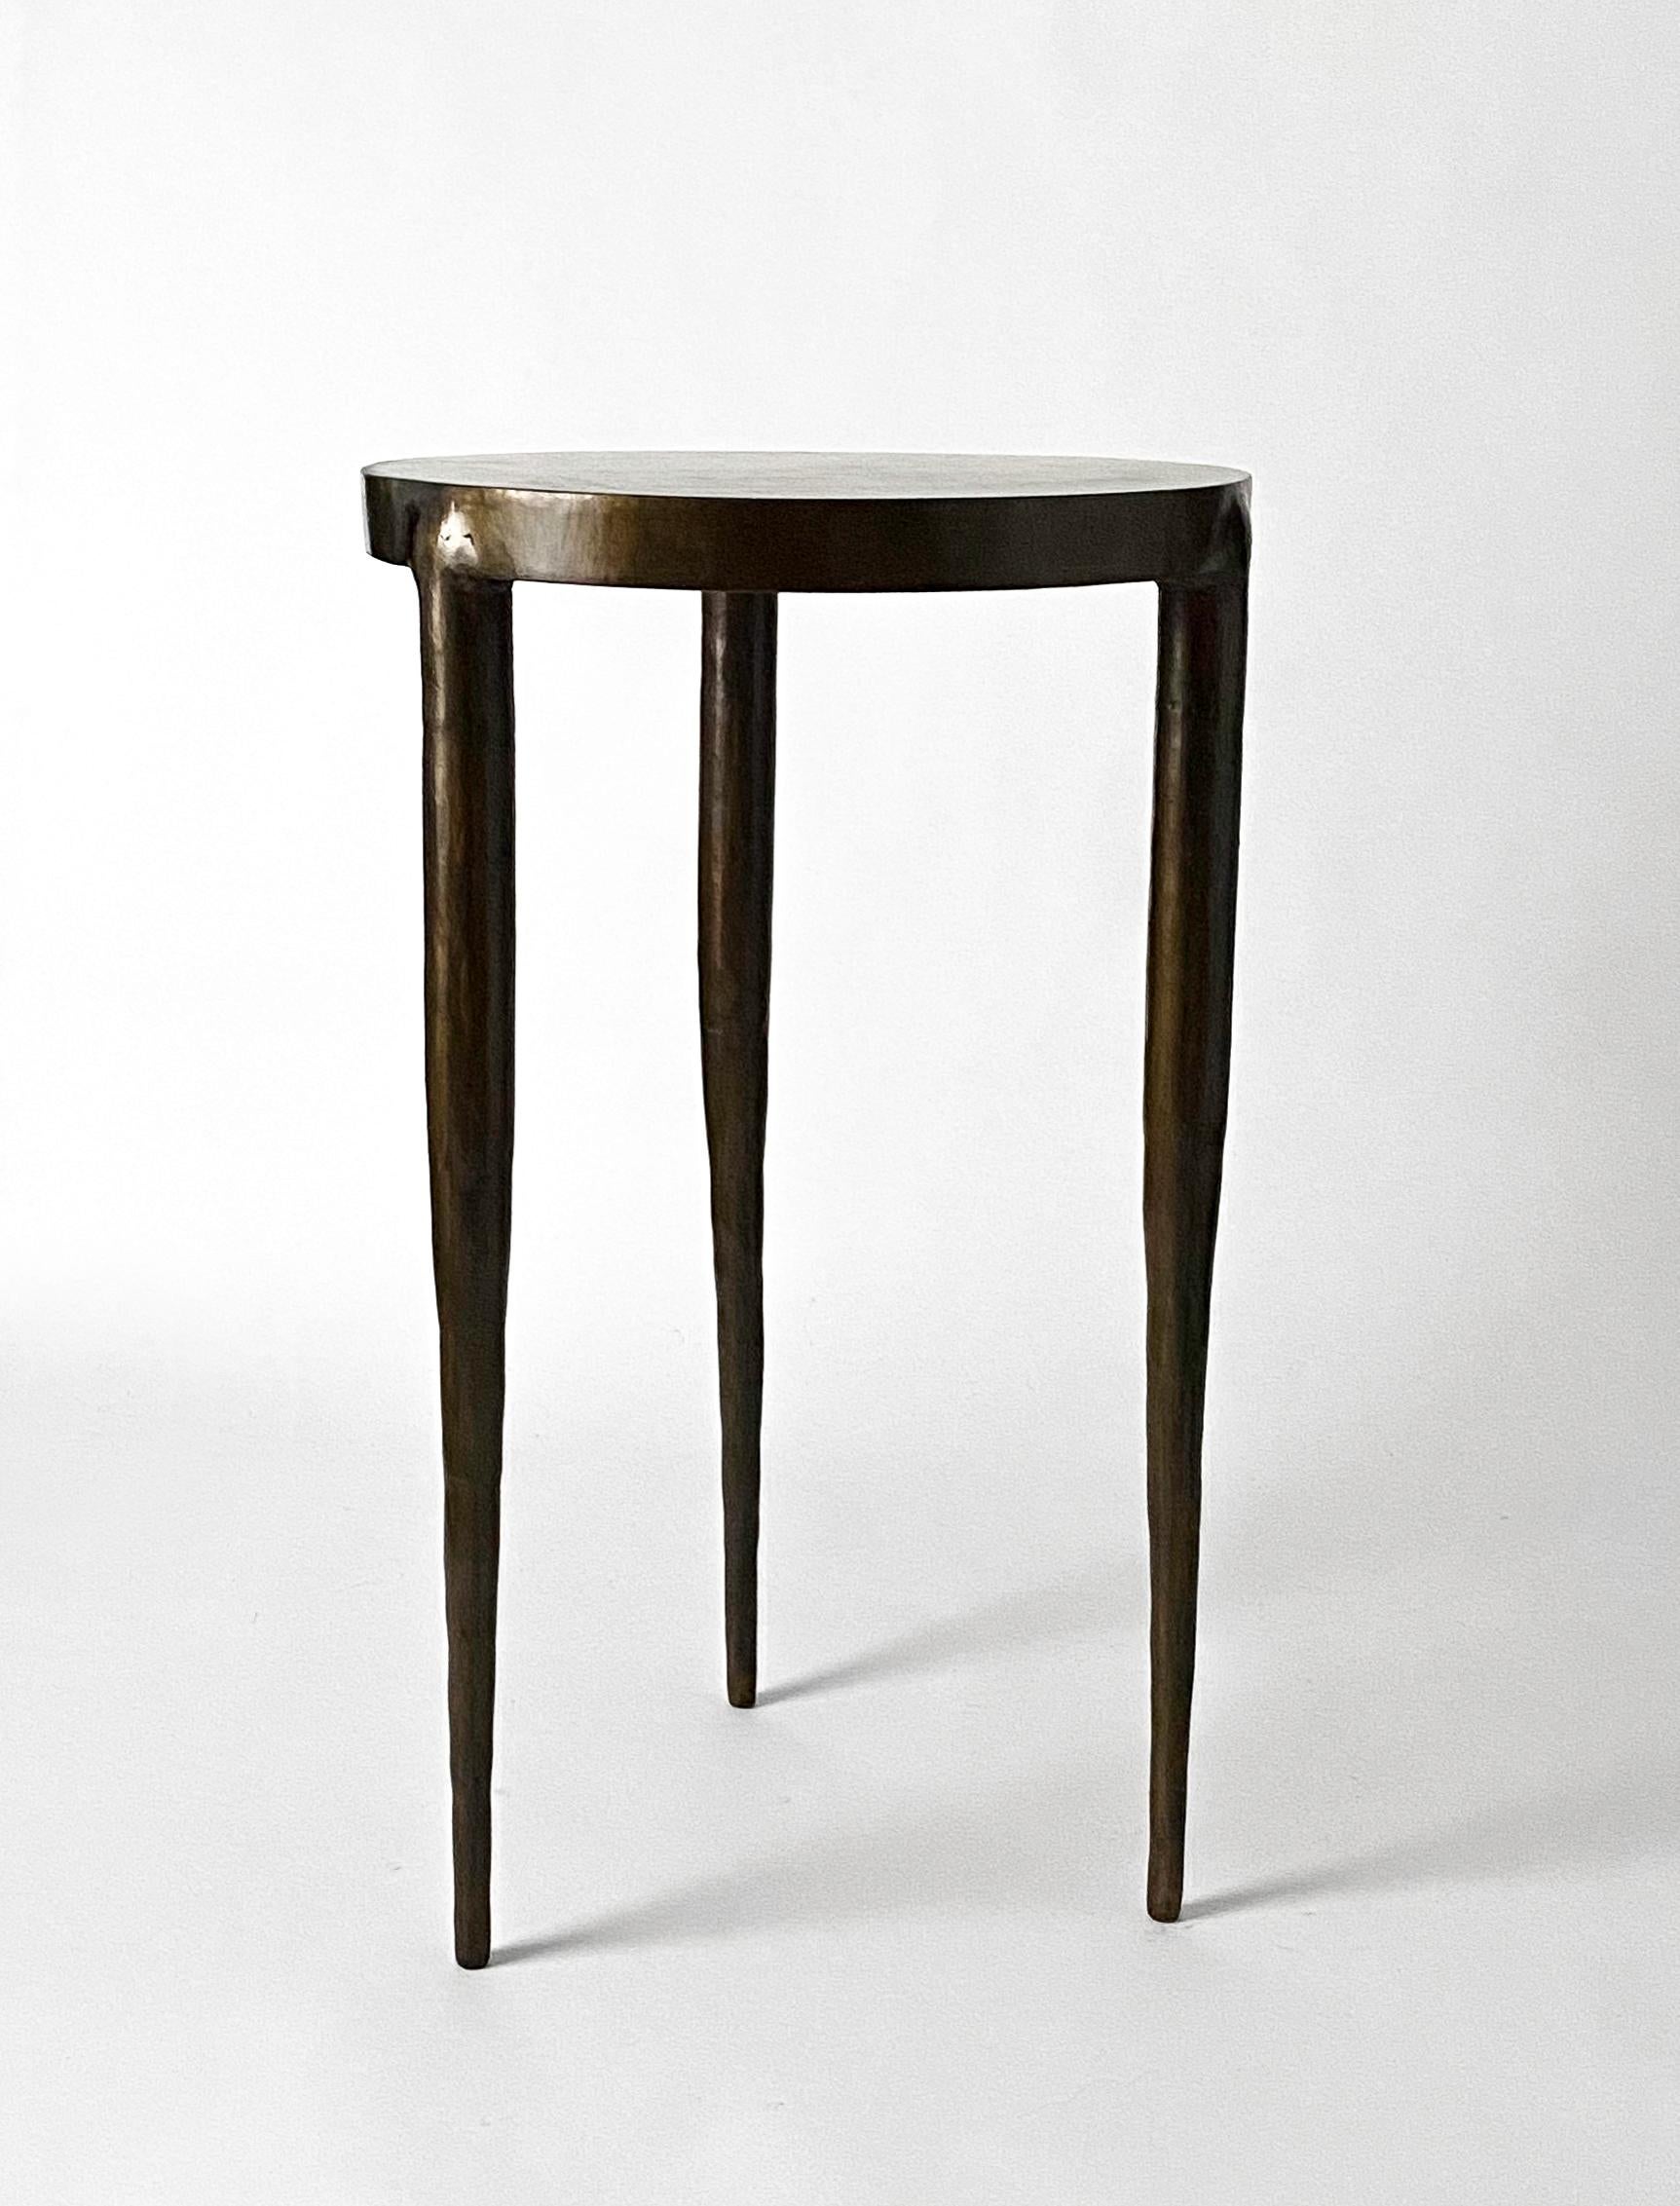 ough-Tisch von Cal Summers
Dimension:  T 58,42 x H 34,29 cm
MATERIALIEN: Geformter Stahl mit Bronzepatina und gewachster Oberfläche.

Cal Summers ist ein britischer Designer, der maßgeschneiderte handgefertigte Möbel und zeitgenössische Artefakte